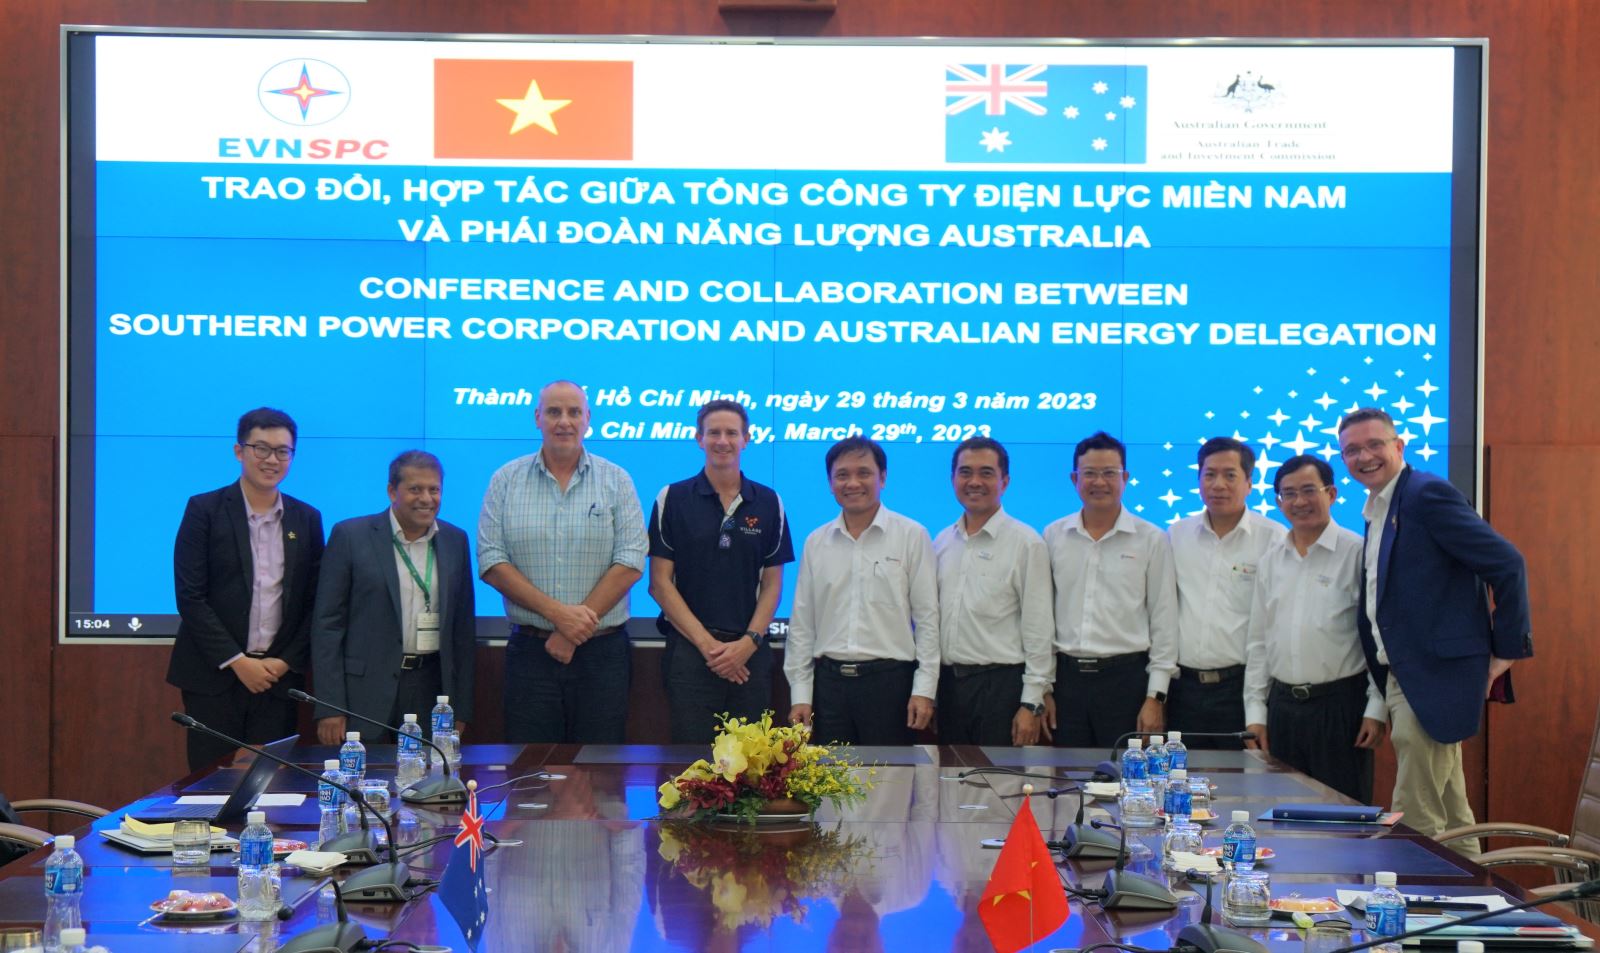 Phái đoàn năng lượng Australia chụp ảnh lưu niệm cùng lãnh đạo EVNSPC.